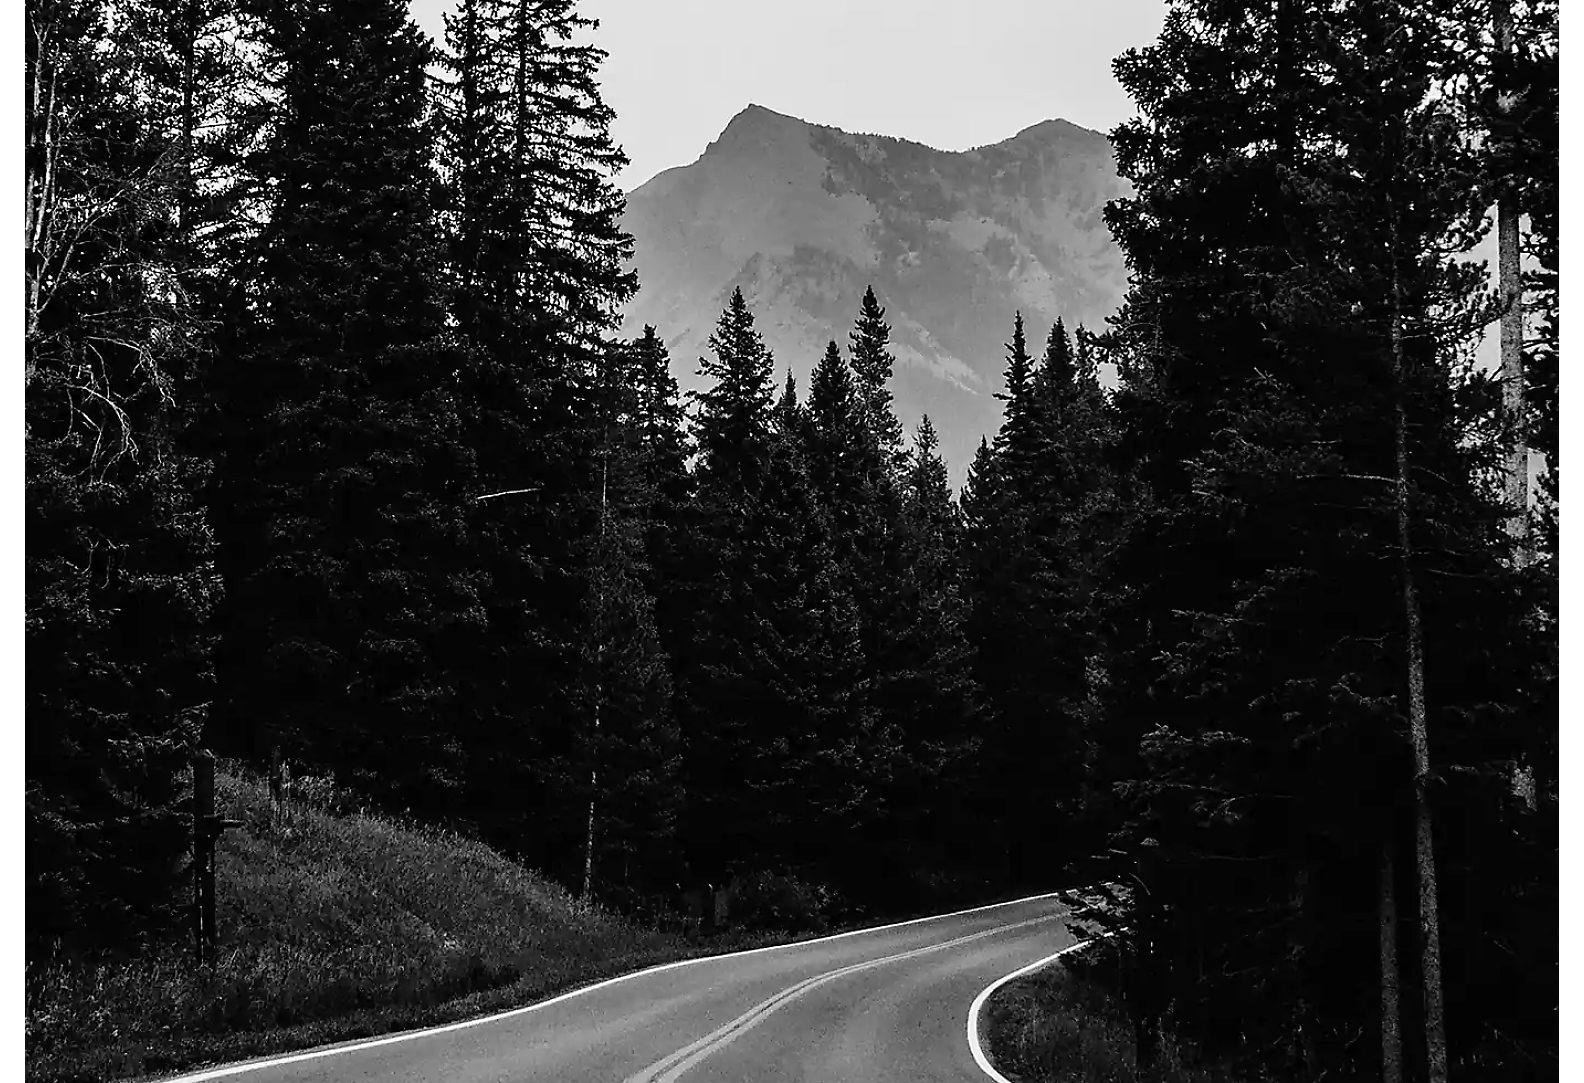 Una carretera de dos carriles en un bosque con un pico montañoso de fondo, en blanco y negro.